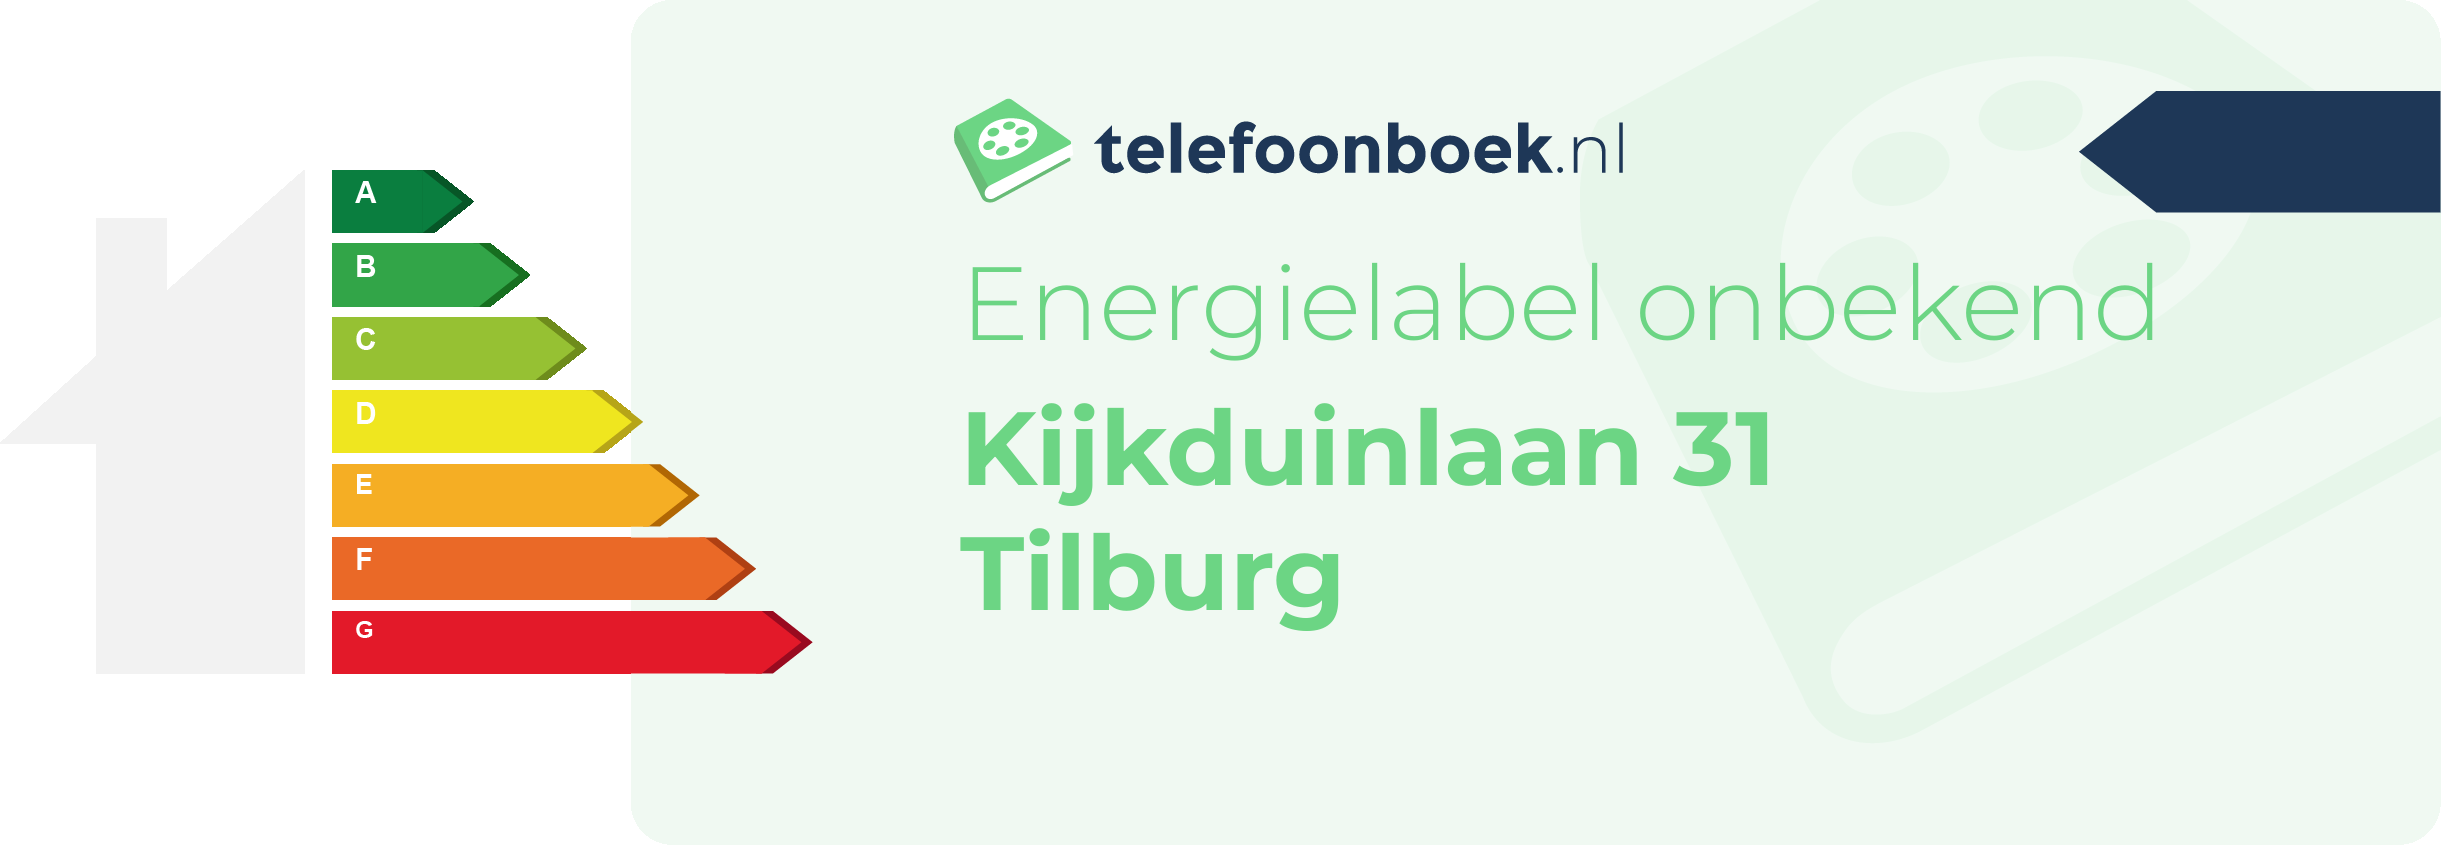 Energielabel Kijkduinlaan 31 Tilburg